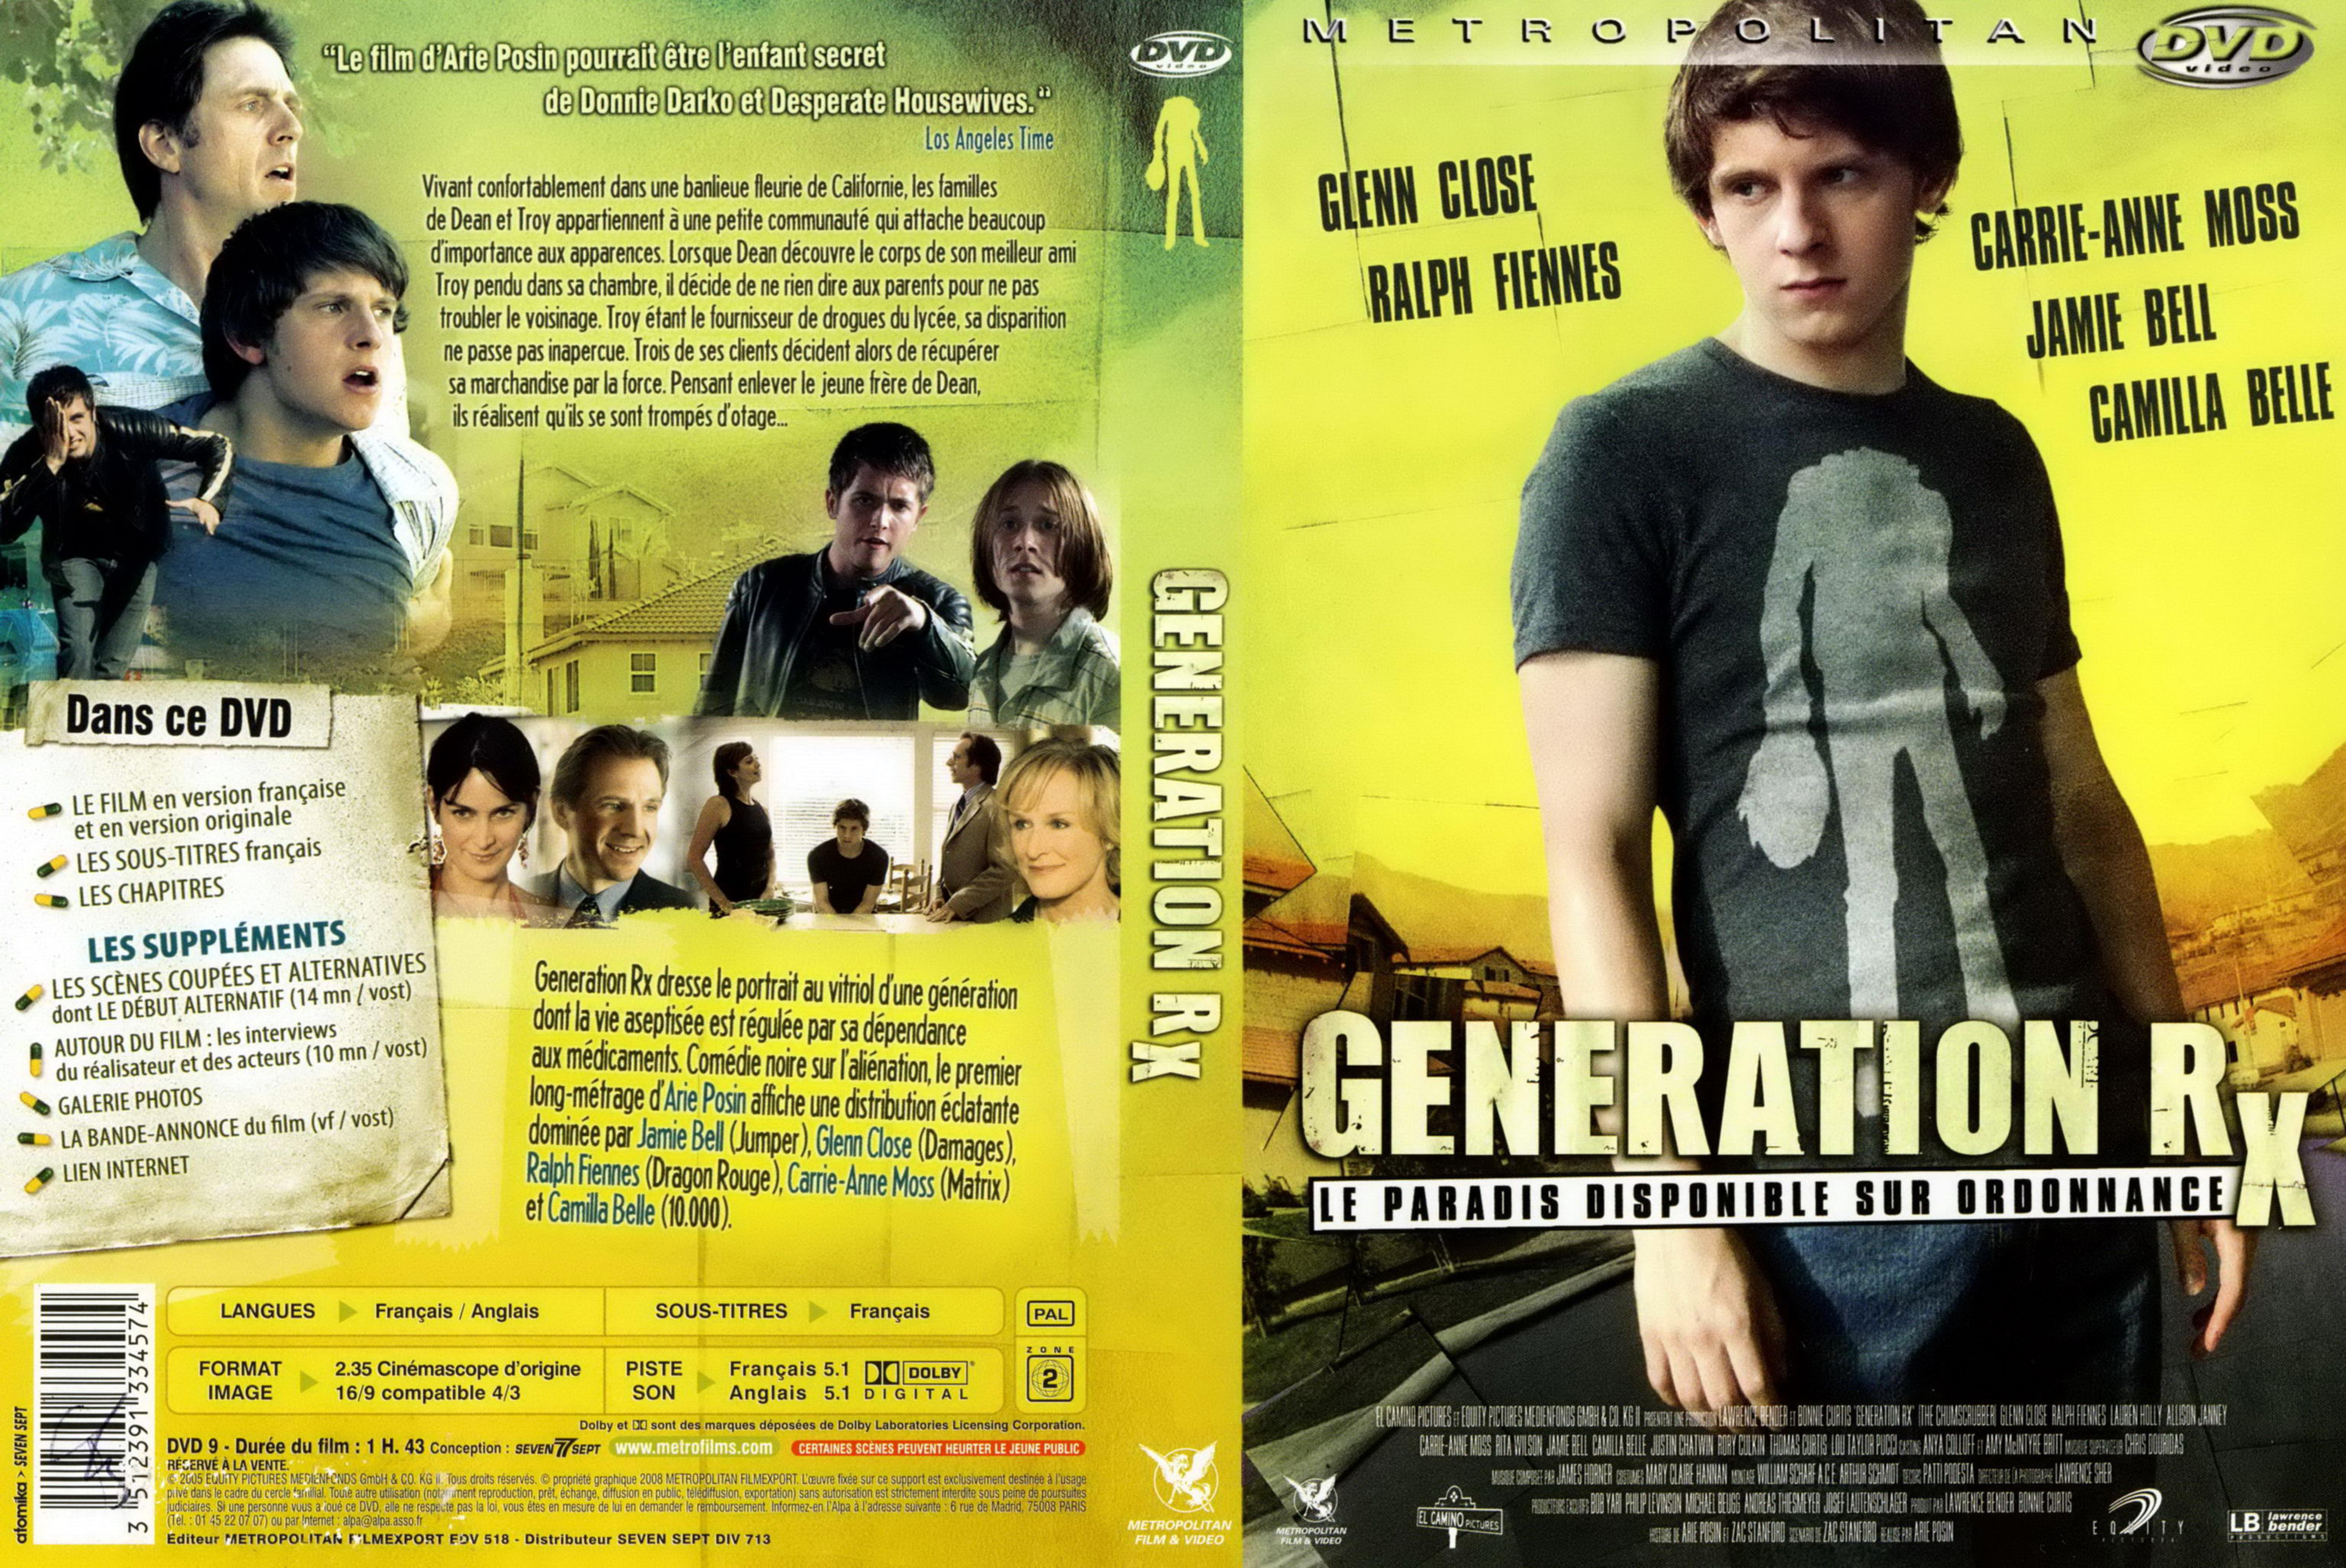 Jaquette DVD Generation RXv2